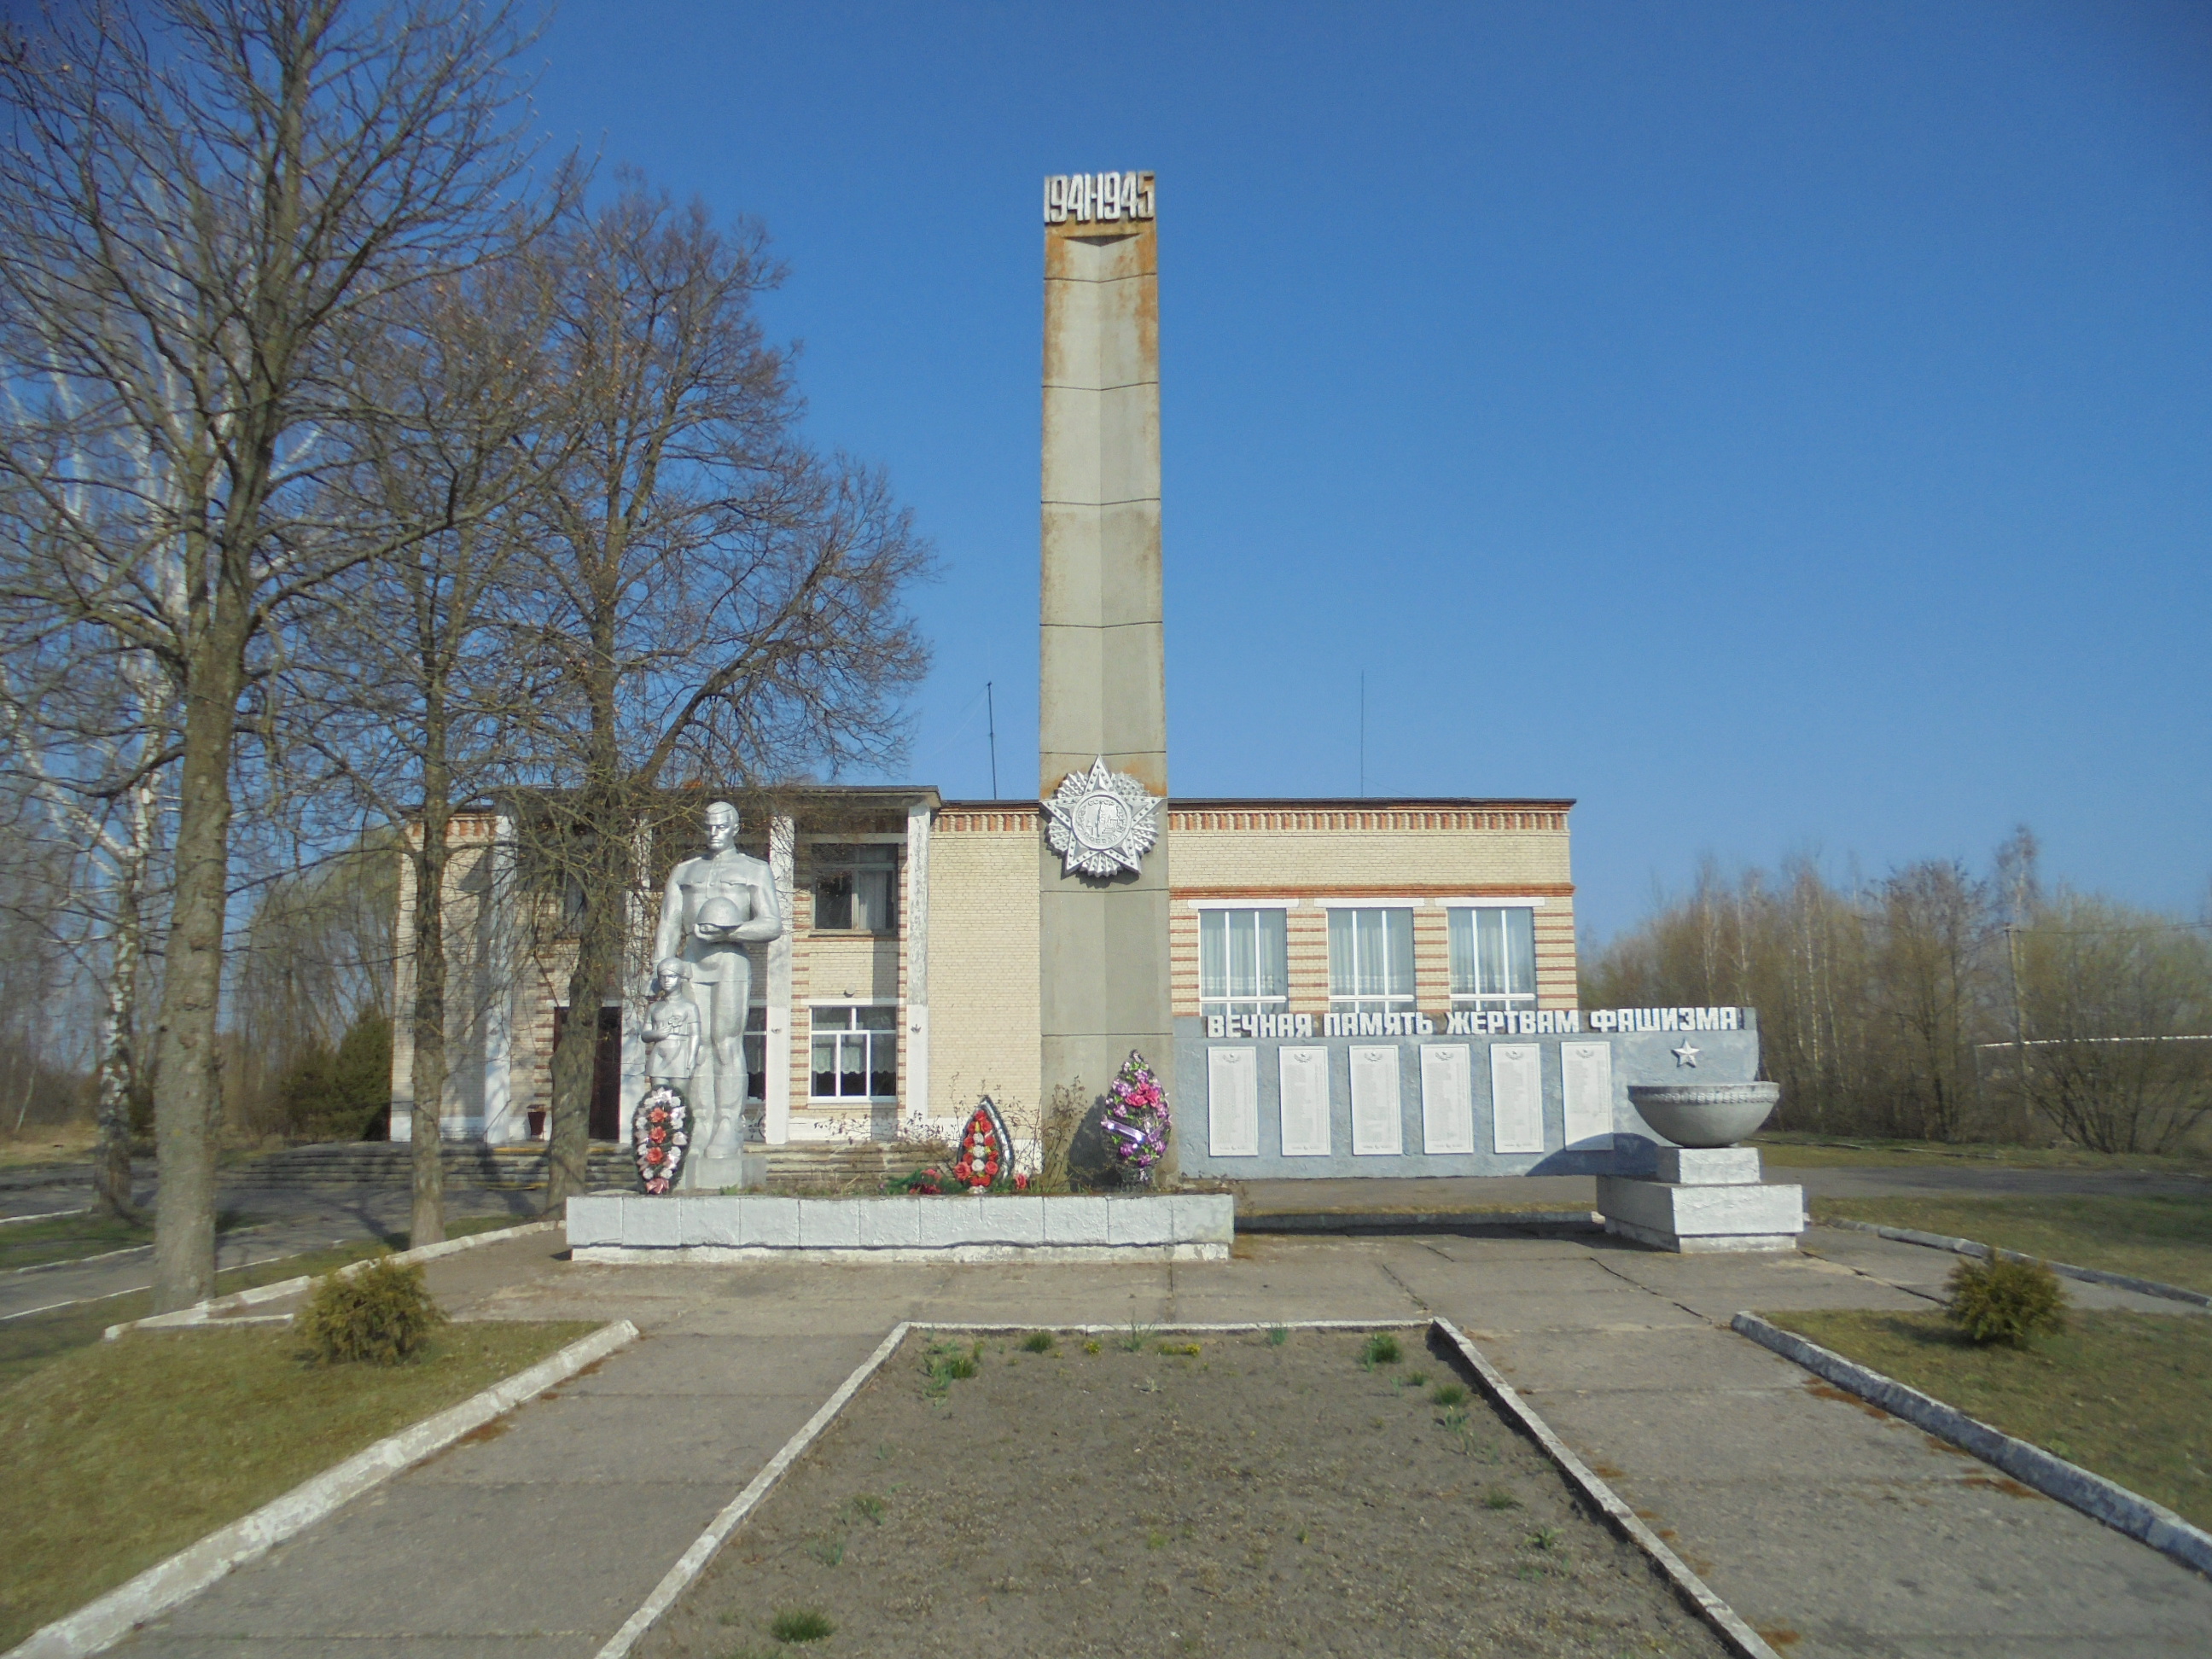 Памятник Землякам, расположенная в Октябрь, Кобринский район, Брестская область